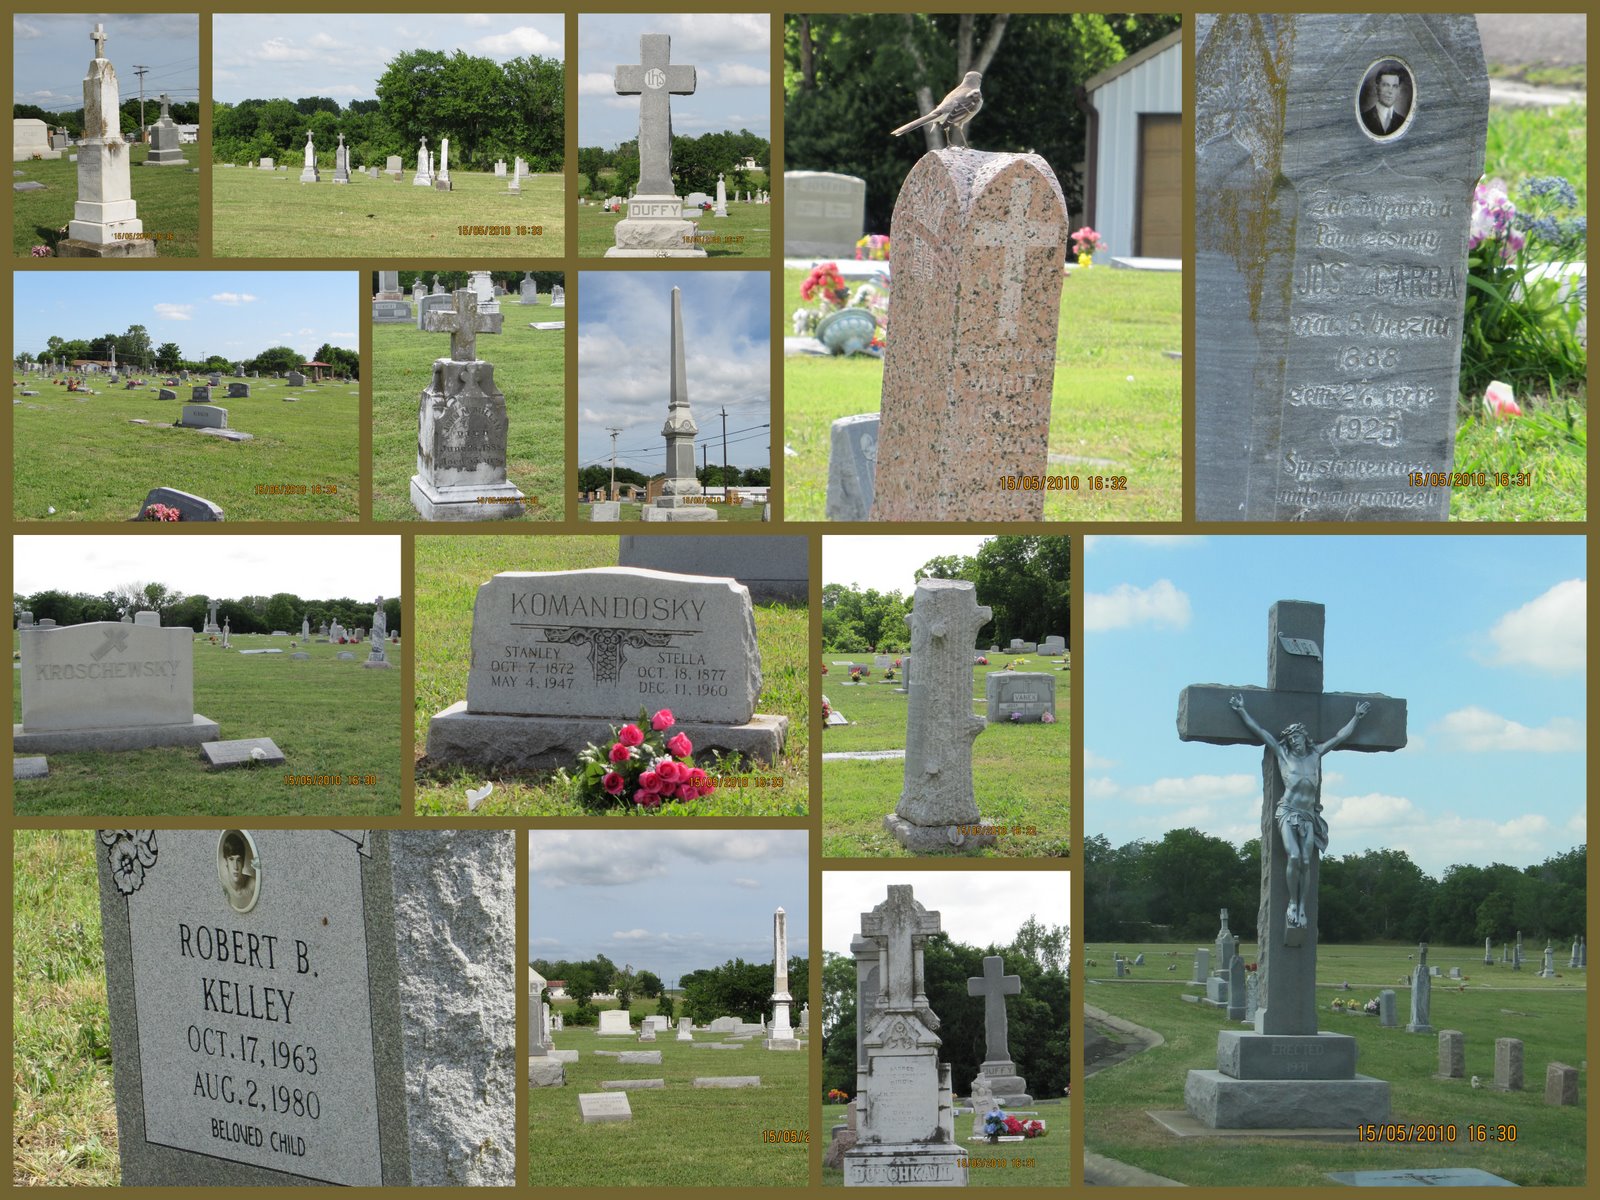 https://blogger.googleusercontent.com/img/b/R29vZ2xl/AVvXsEhzkAy2y1vQZ6tS9U5GozgDIkgYfbNMXqGrylsj8HViNlbvbAJJ2bcykyyhIIvYUmK2qY3zKgN6VgSsU4zhfdC7VZEQ6f9t1CvySx5gyi3bNo5Bwb68kE0kvMDOA4KCAcgM_dxgGHkwMxA/s1600/2010-05-15+Taylor+Catholic_Cemetery.jpg